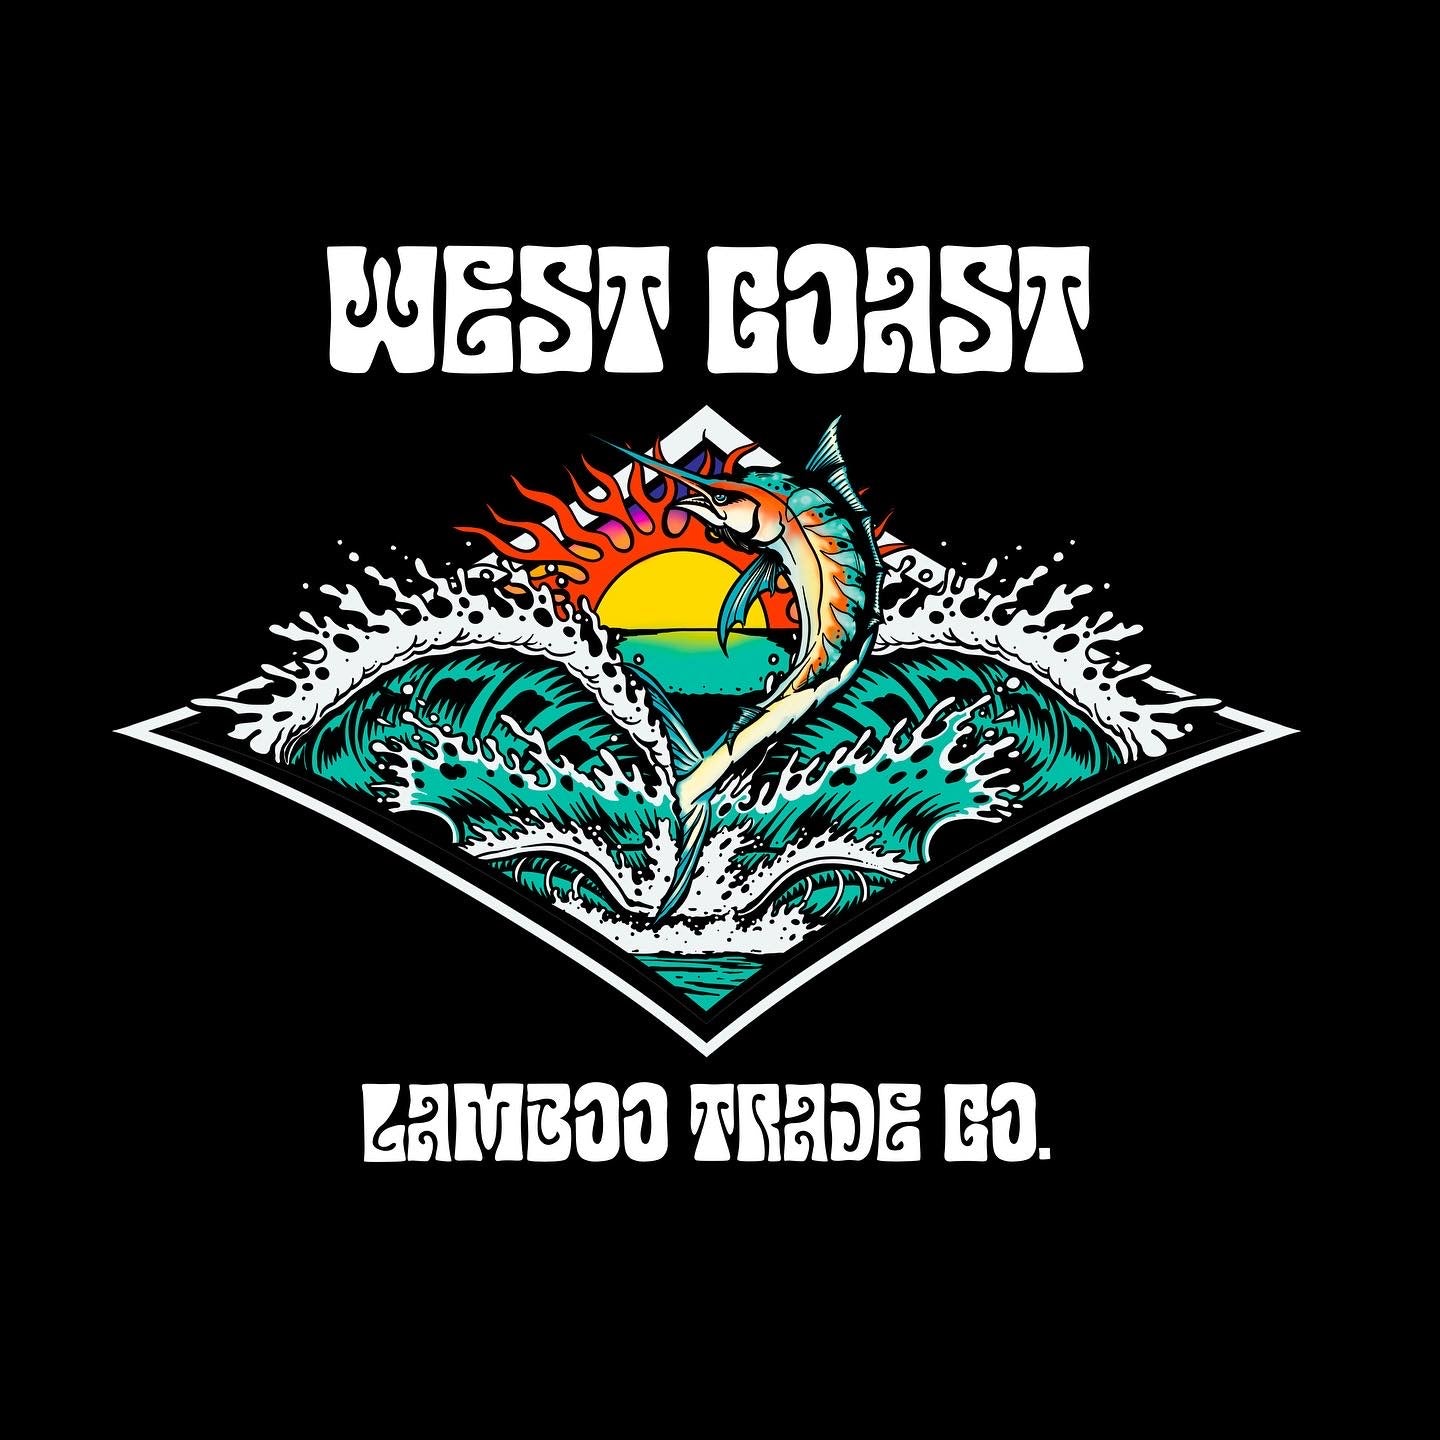 West Coast Tee